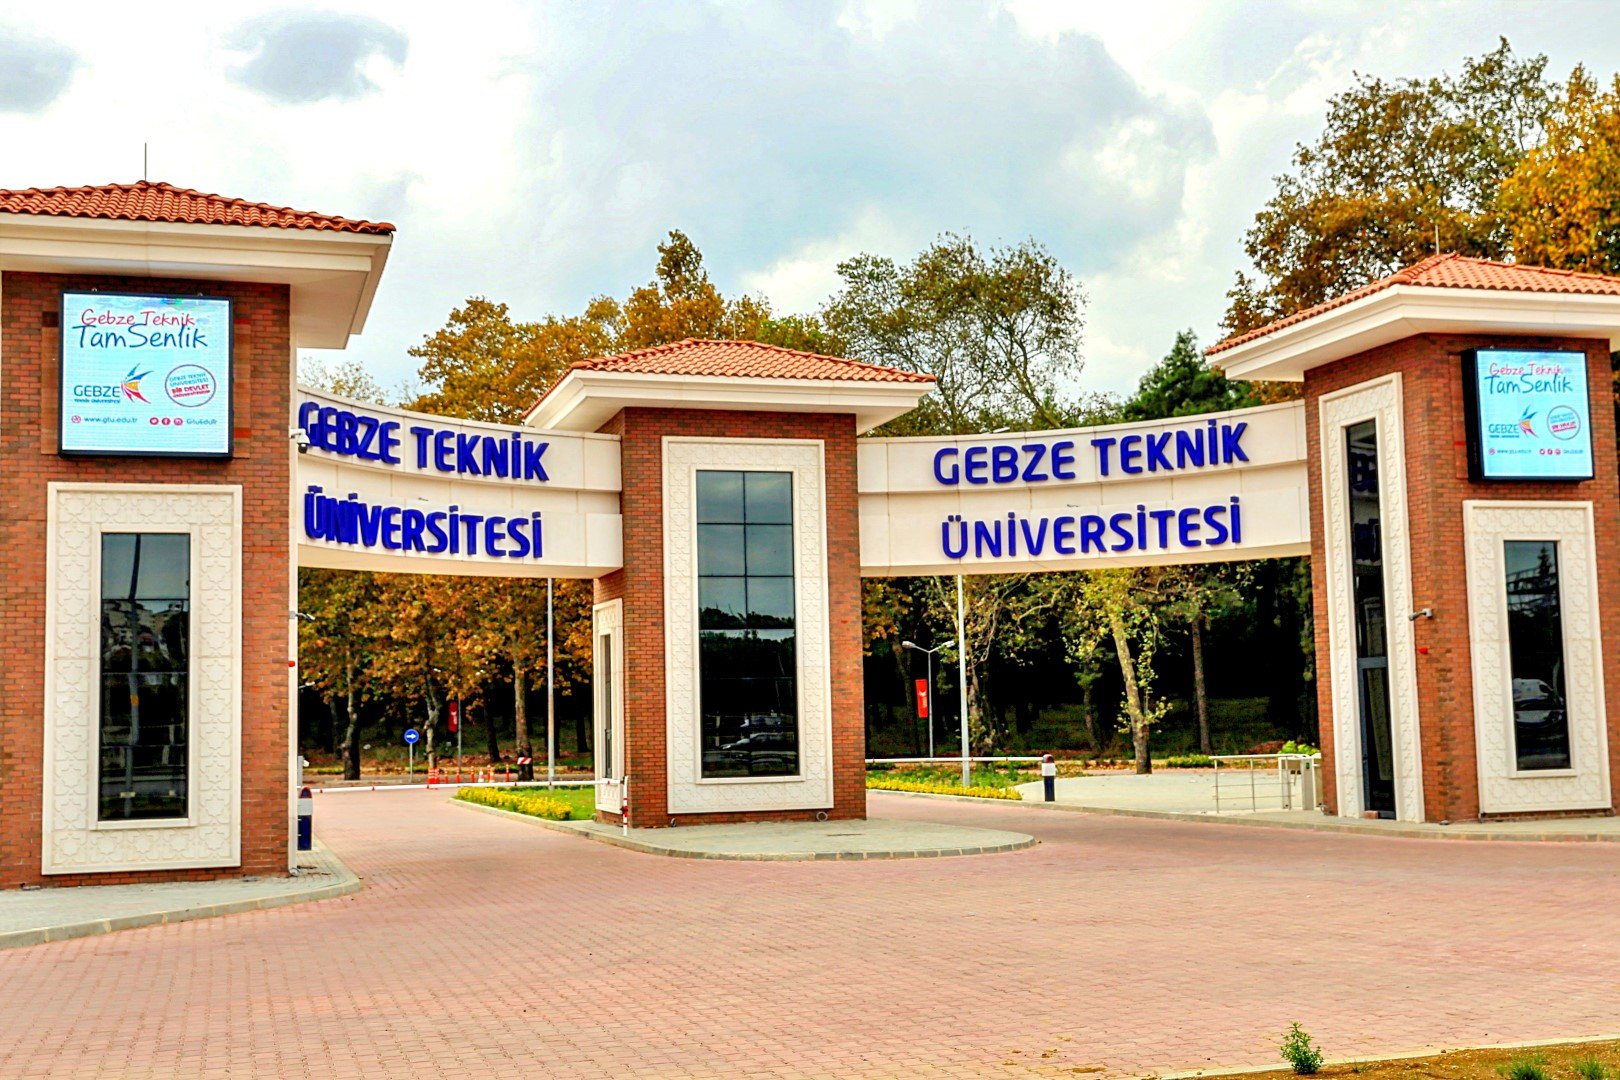 GTÜ'den Tersaneler Genel Müdürlüğü'ne akademik destek